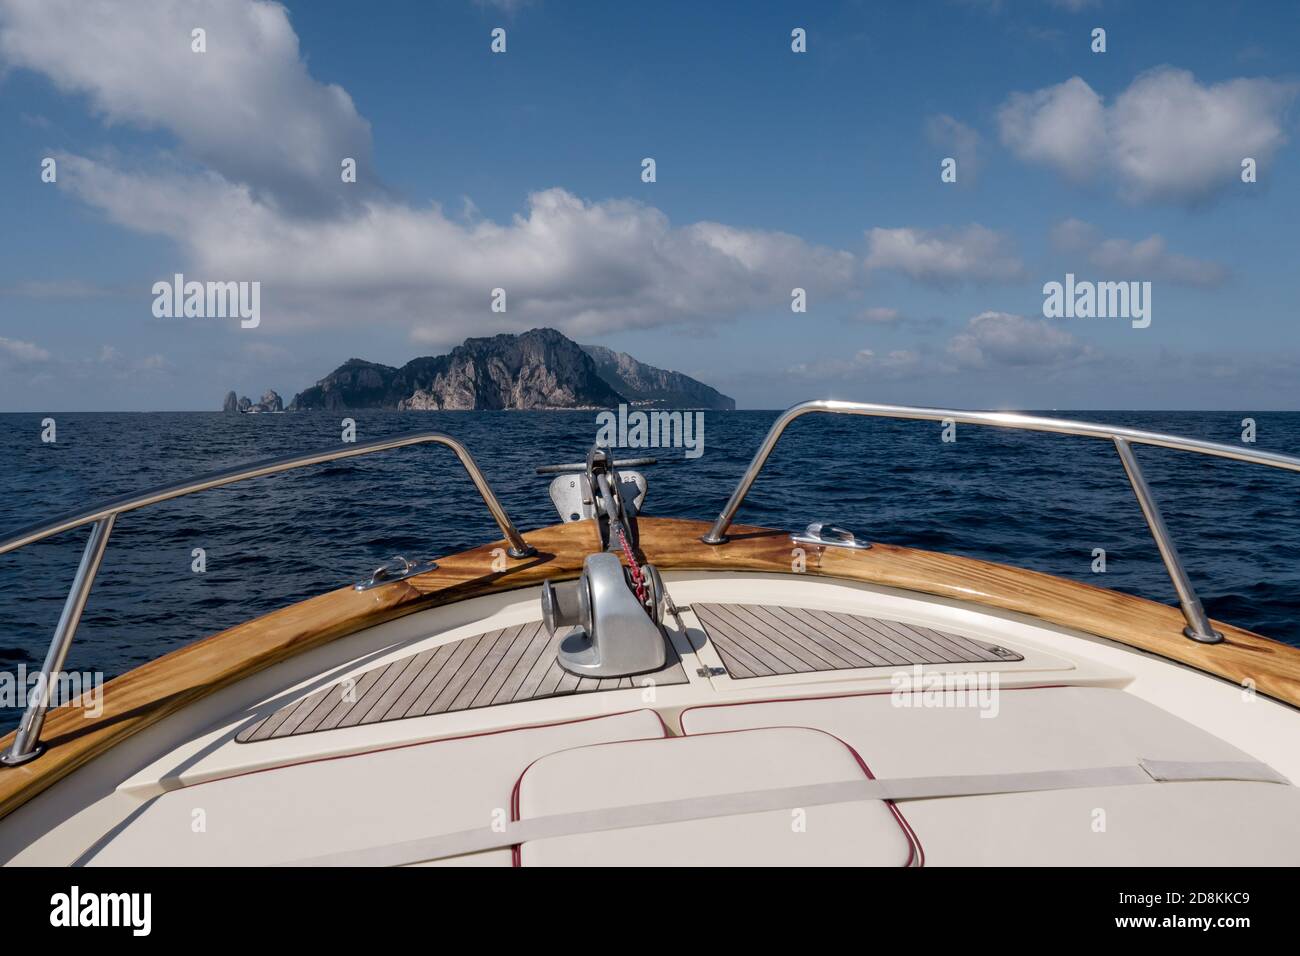 Prua di una barca diretta all'isola di Capri, il prow di uno yacht sulla costa sorrentina in Italia Foto Stock